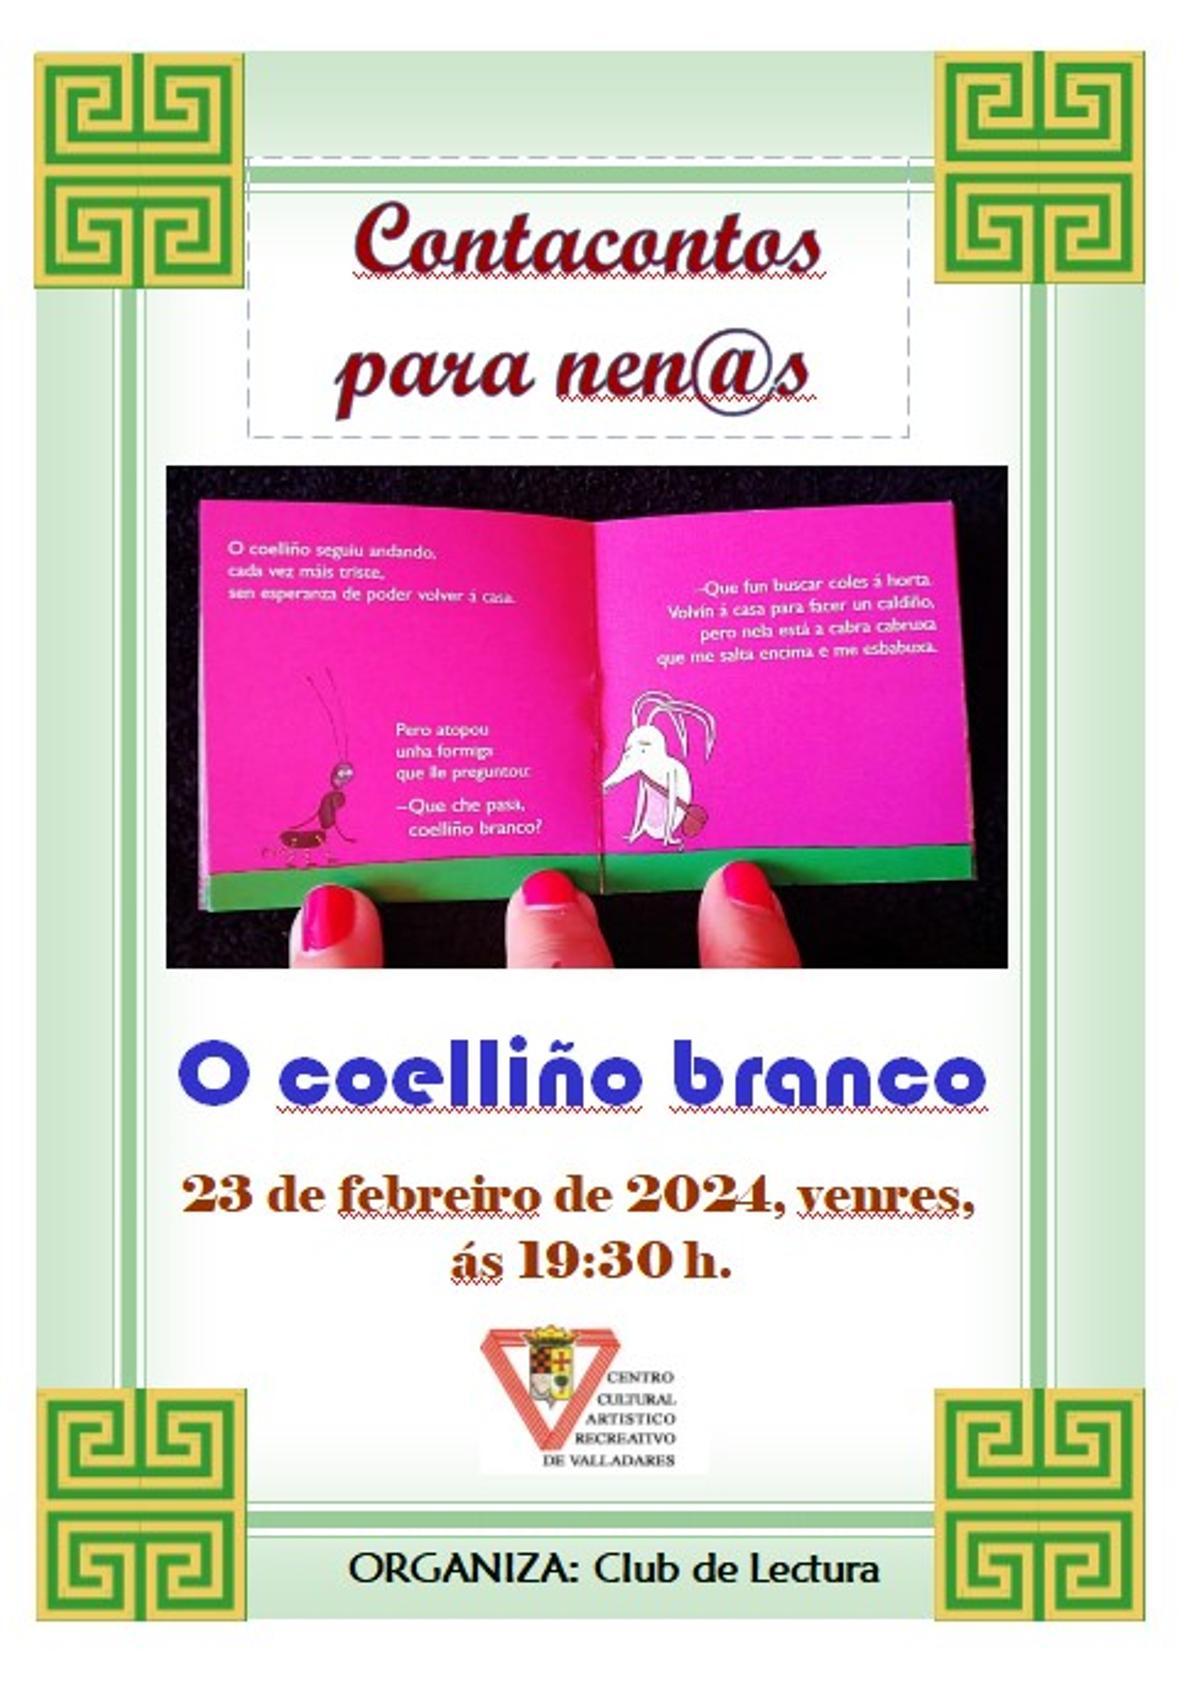 Cartel anunciador del cuentacuentos en Valladares.